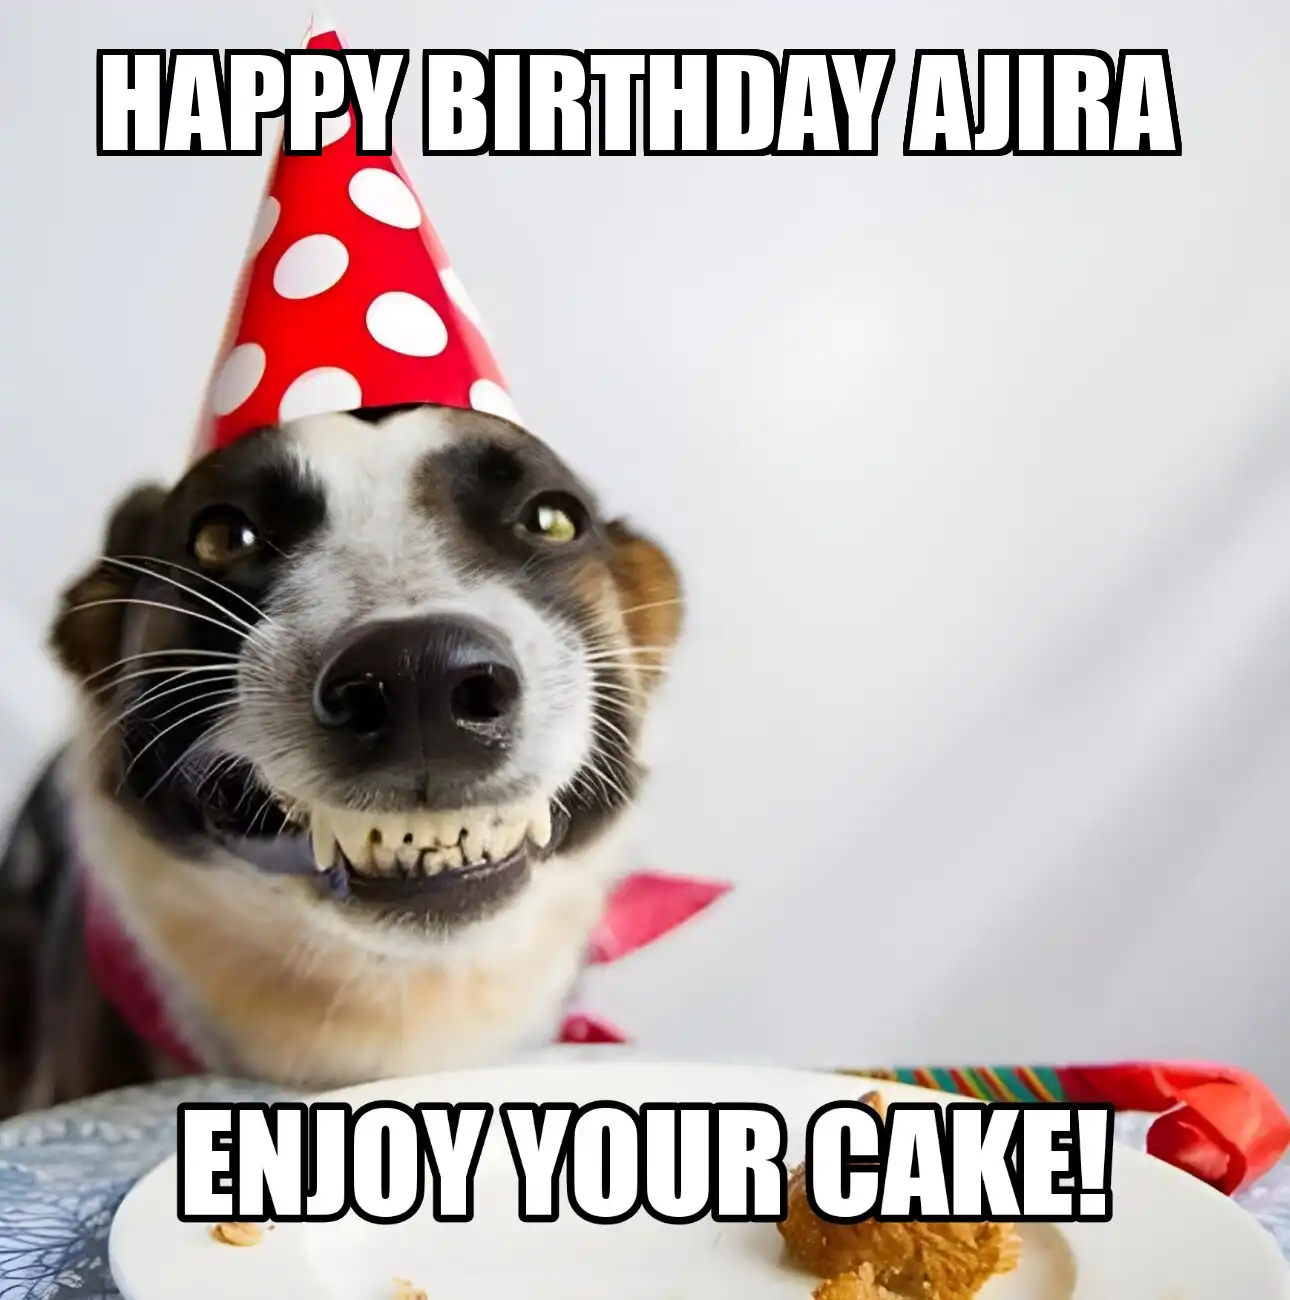 Happy Birthday Ajira Enjoy Your Cake Dog Meme